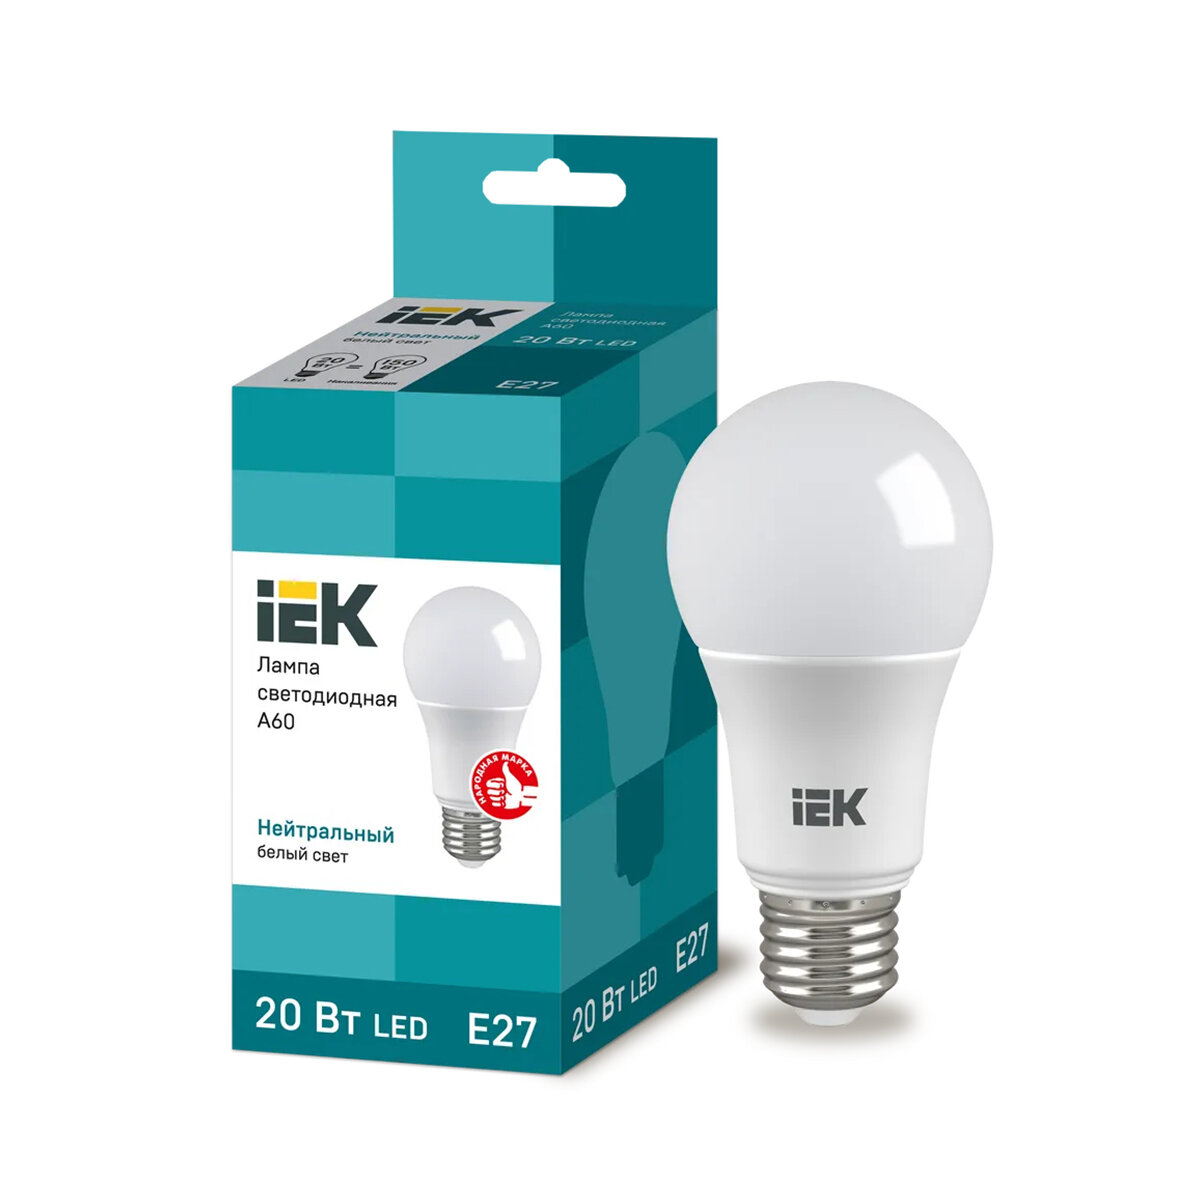 IEK Лампа светодиодная LED Шар, E27, A60, 20 Вт, 4000 K, нейтральный свет